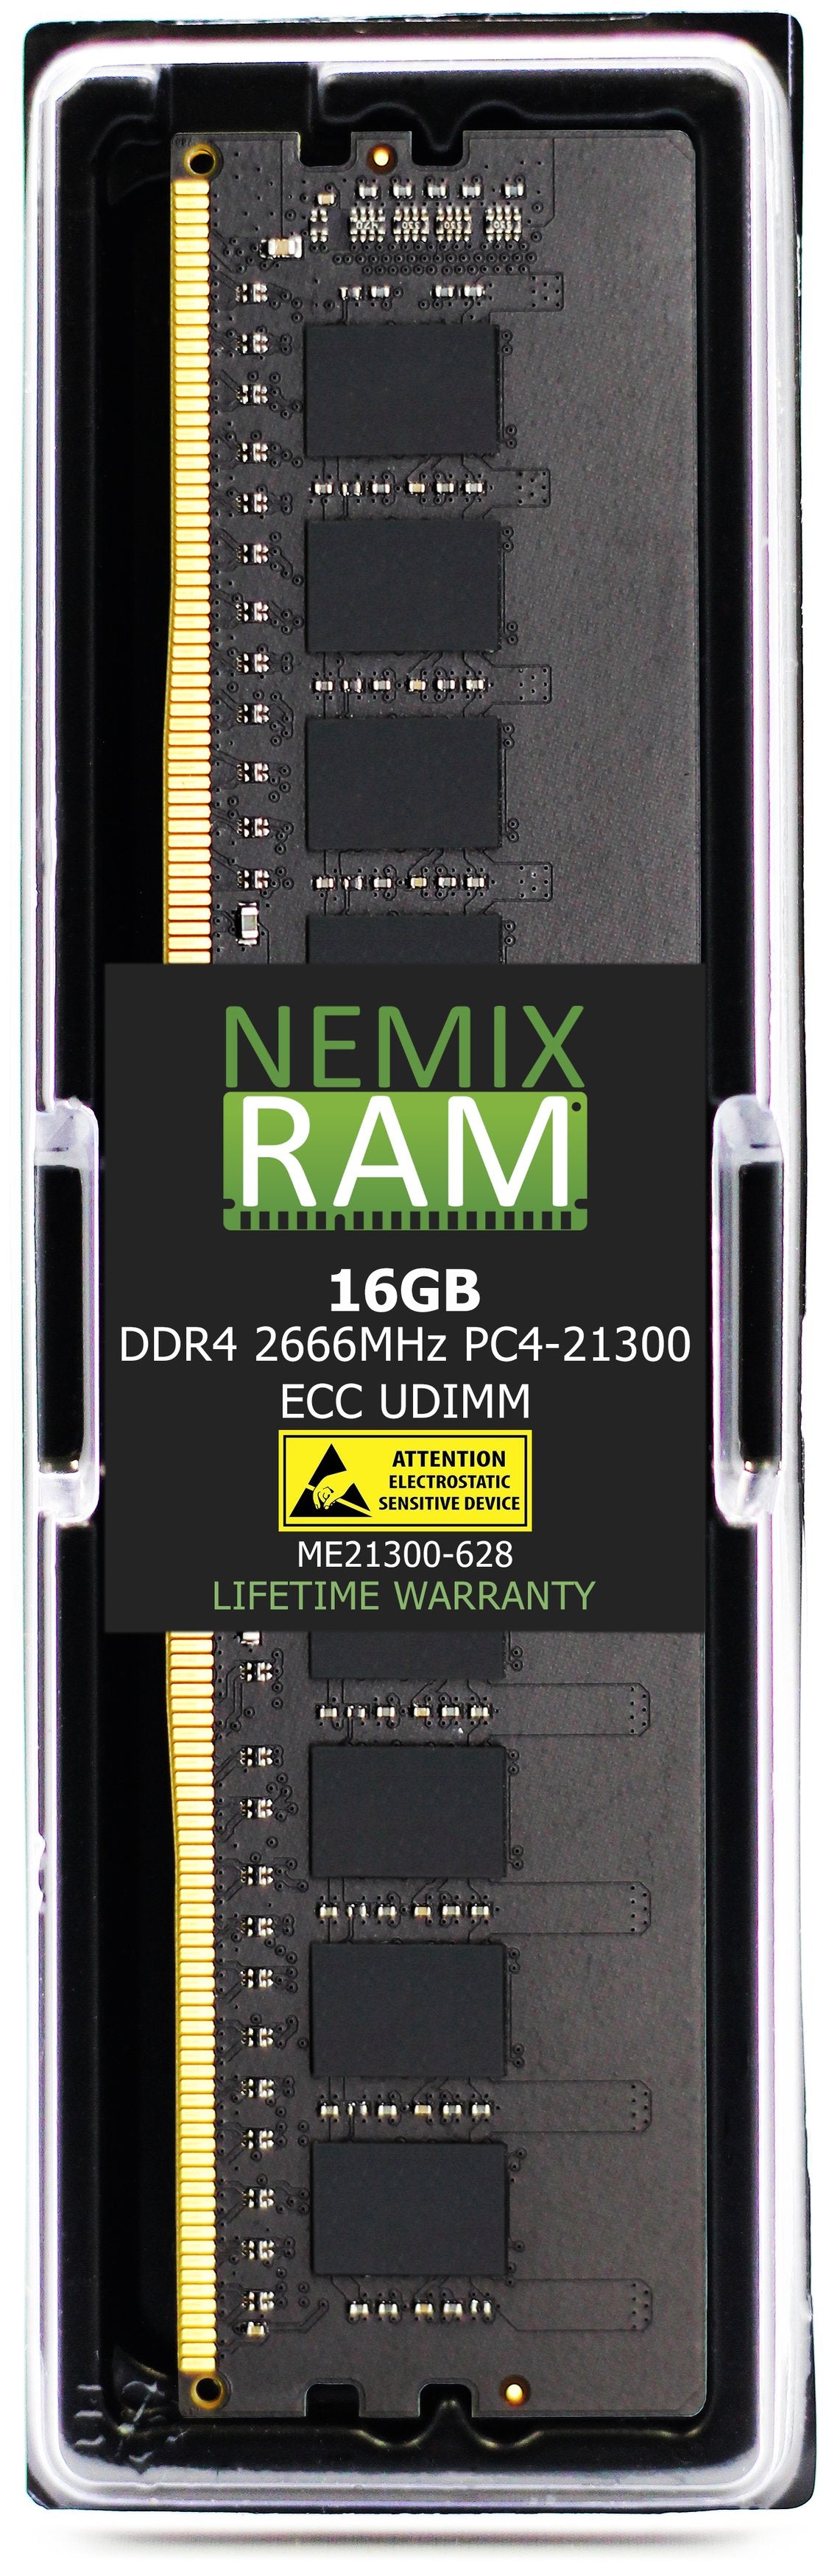 16GB DDR4 2666MHZ PC4-21300 VLP ECC UDIMM Compatible with Supermicro MEM-DR416L-CV03-EU26